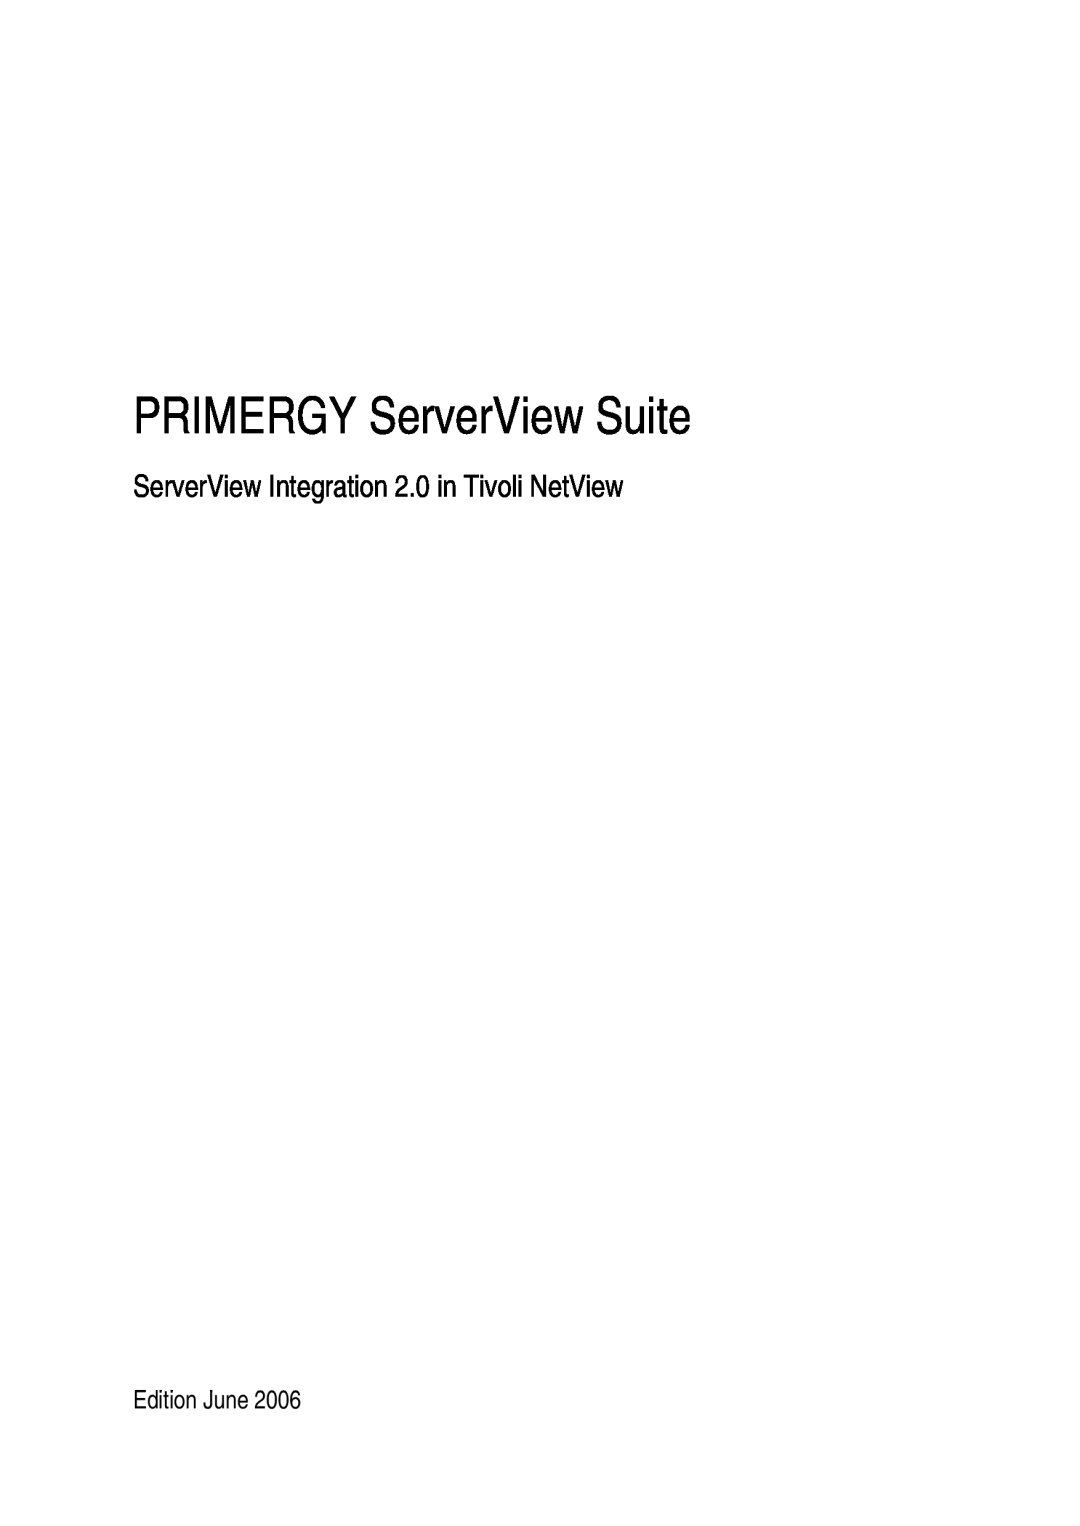 3D Connexion TivoII manual PRIMERGY ServerView Suite, ServerView Integration 2.0 in Tivoli NetView 